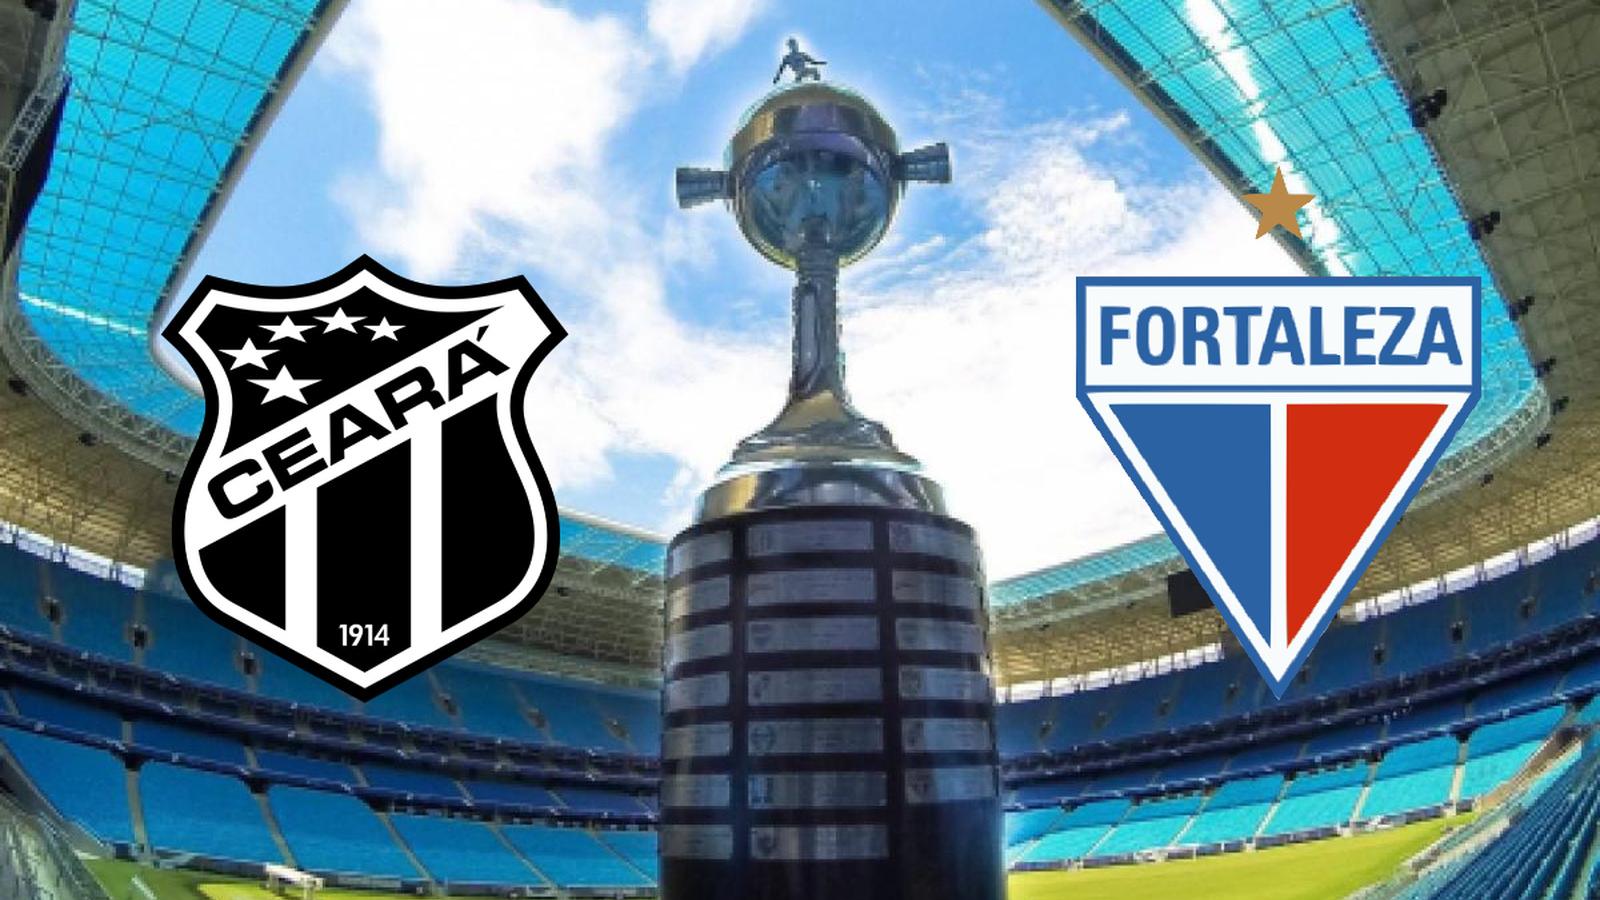 Fortaleza garante vaga direta na fase de grupos da Libertadores de